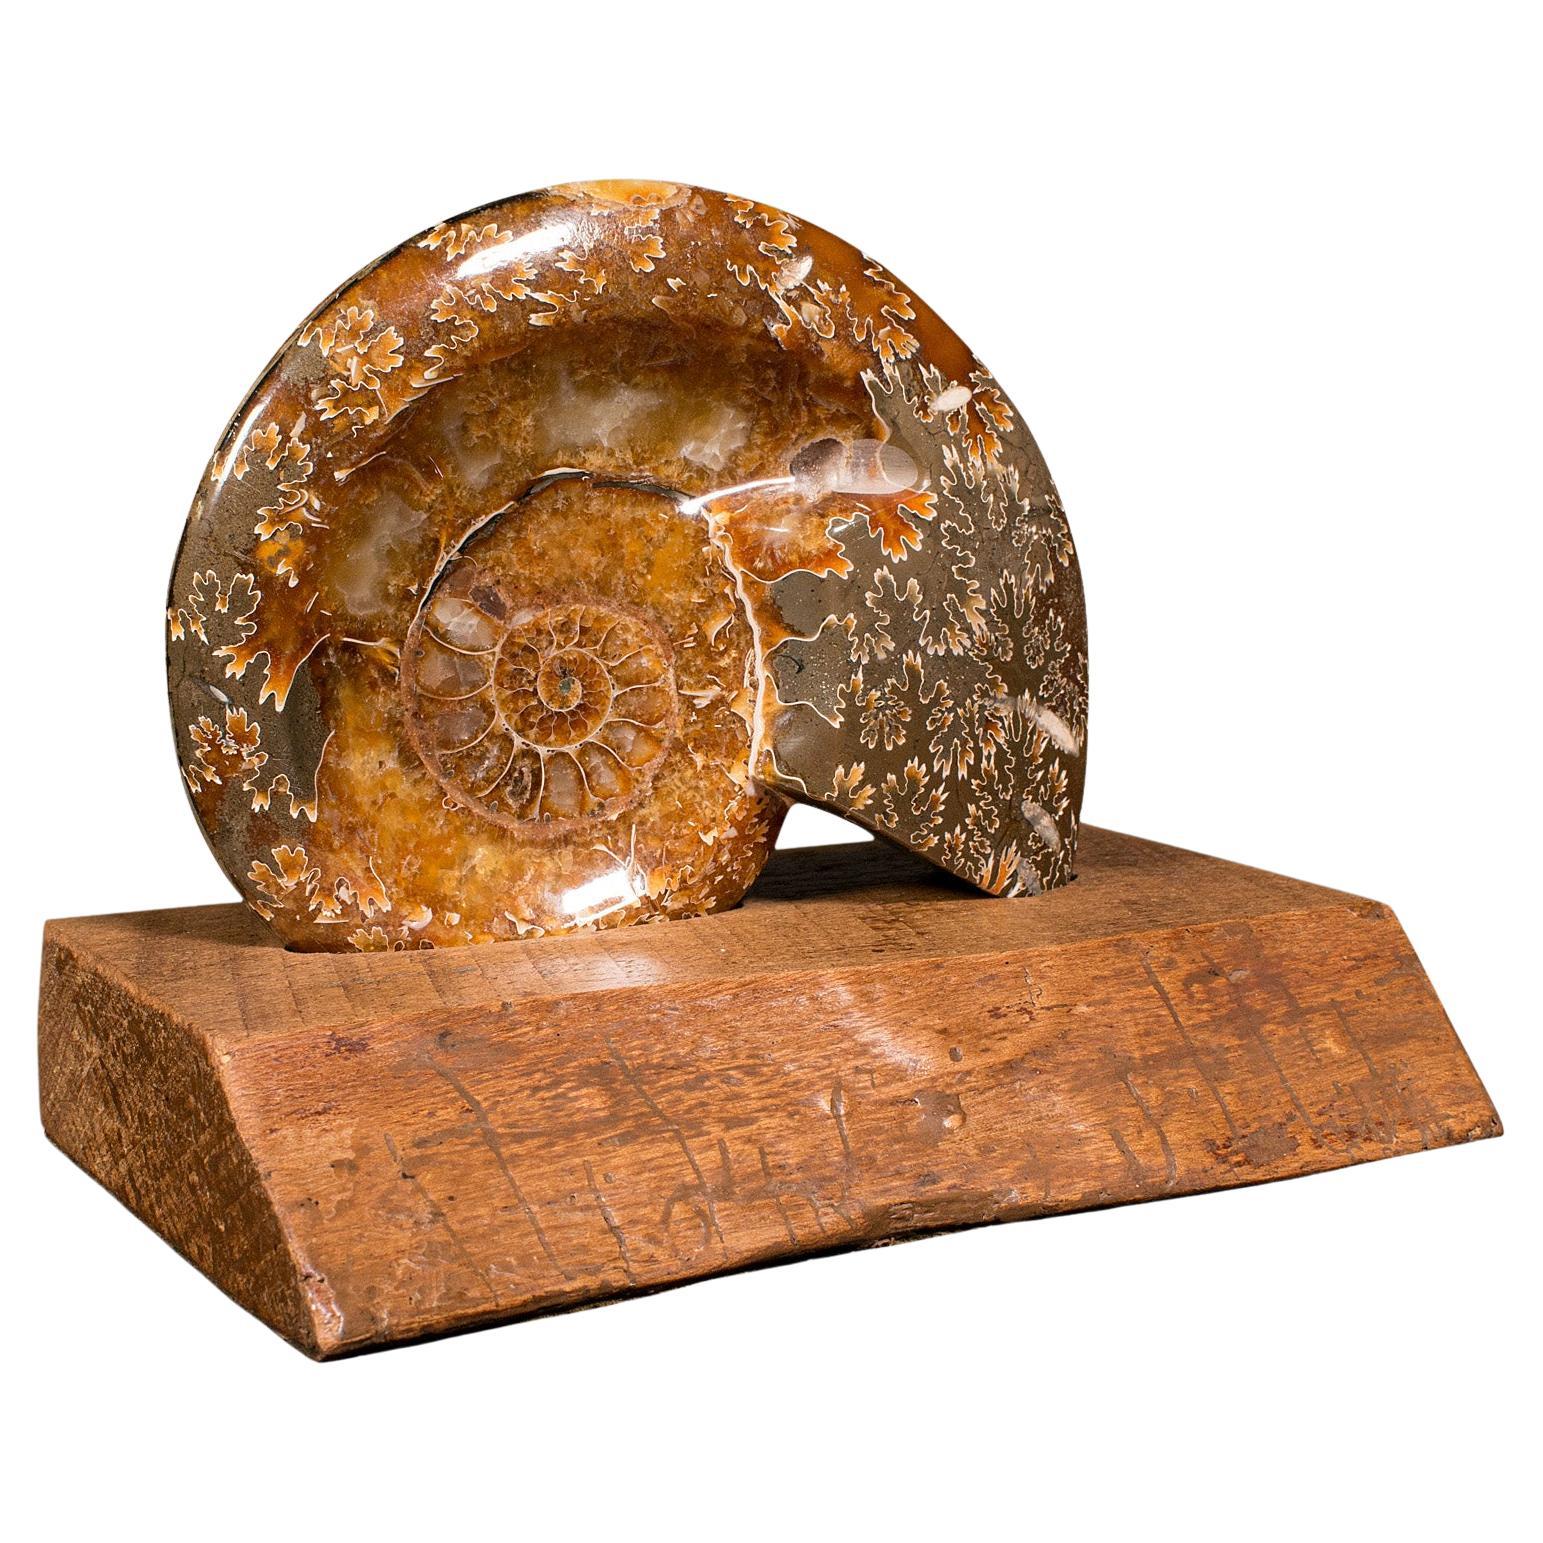 Ammonite décorative vintage africaine, fossile opalisé, exposition, spécimen, vers 1970